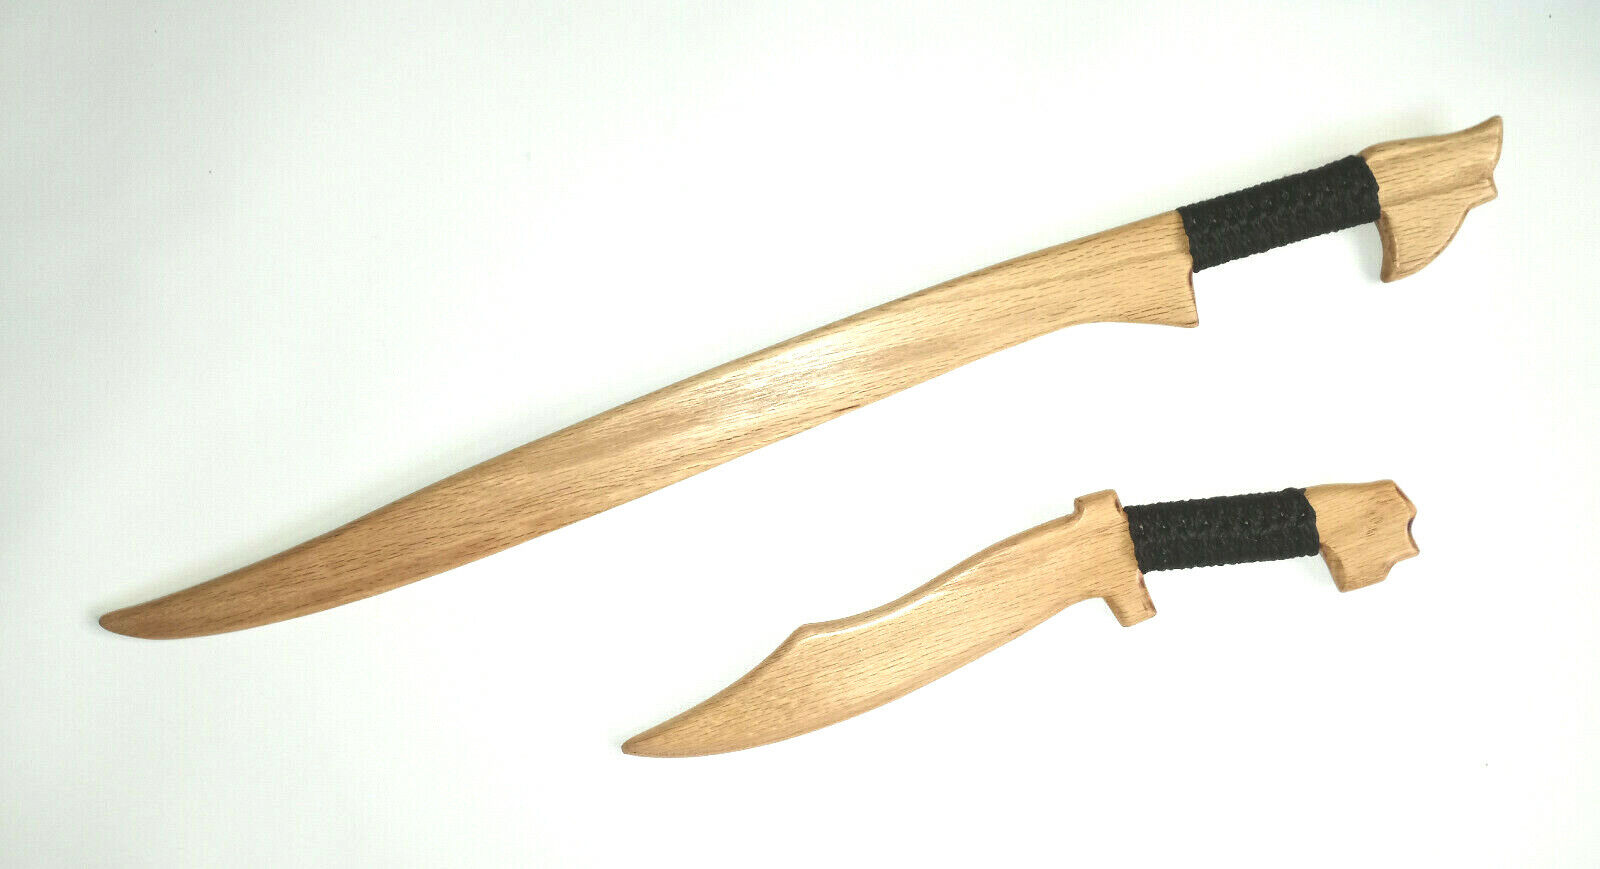 Training Sword Espada Dagger Kali Escrima Wood Katana Bokken Practice Knife